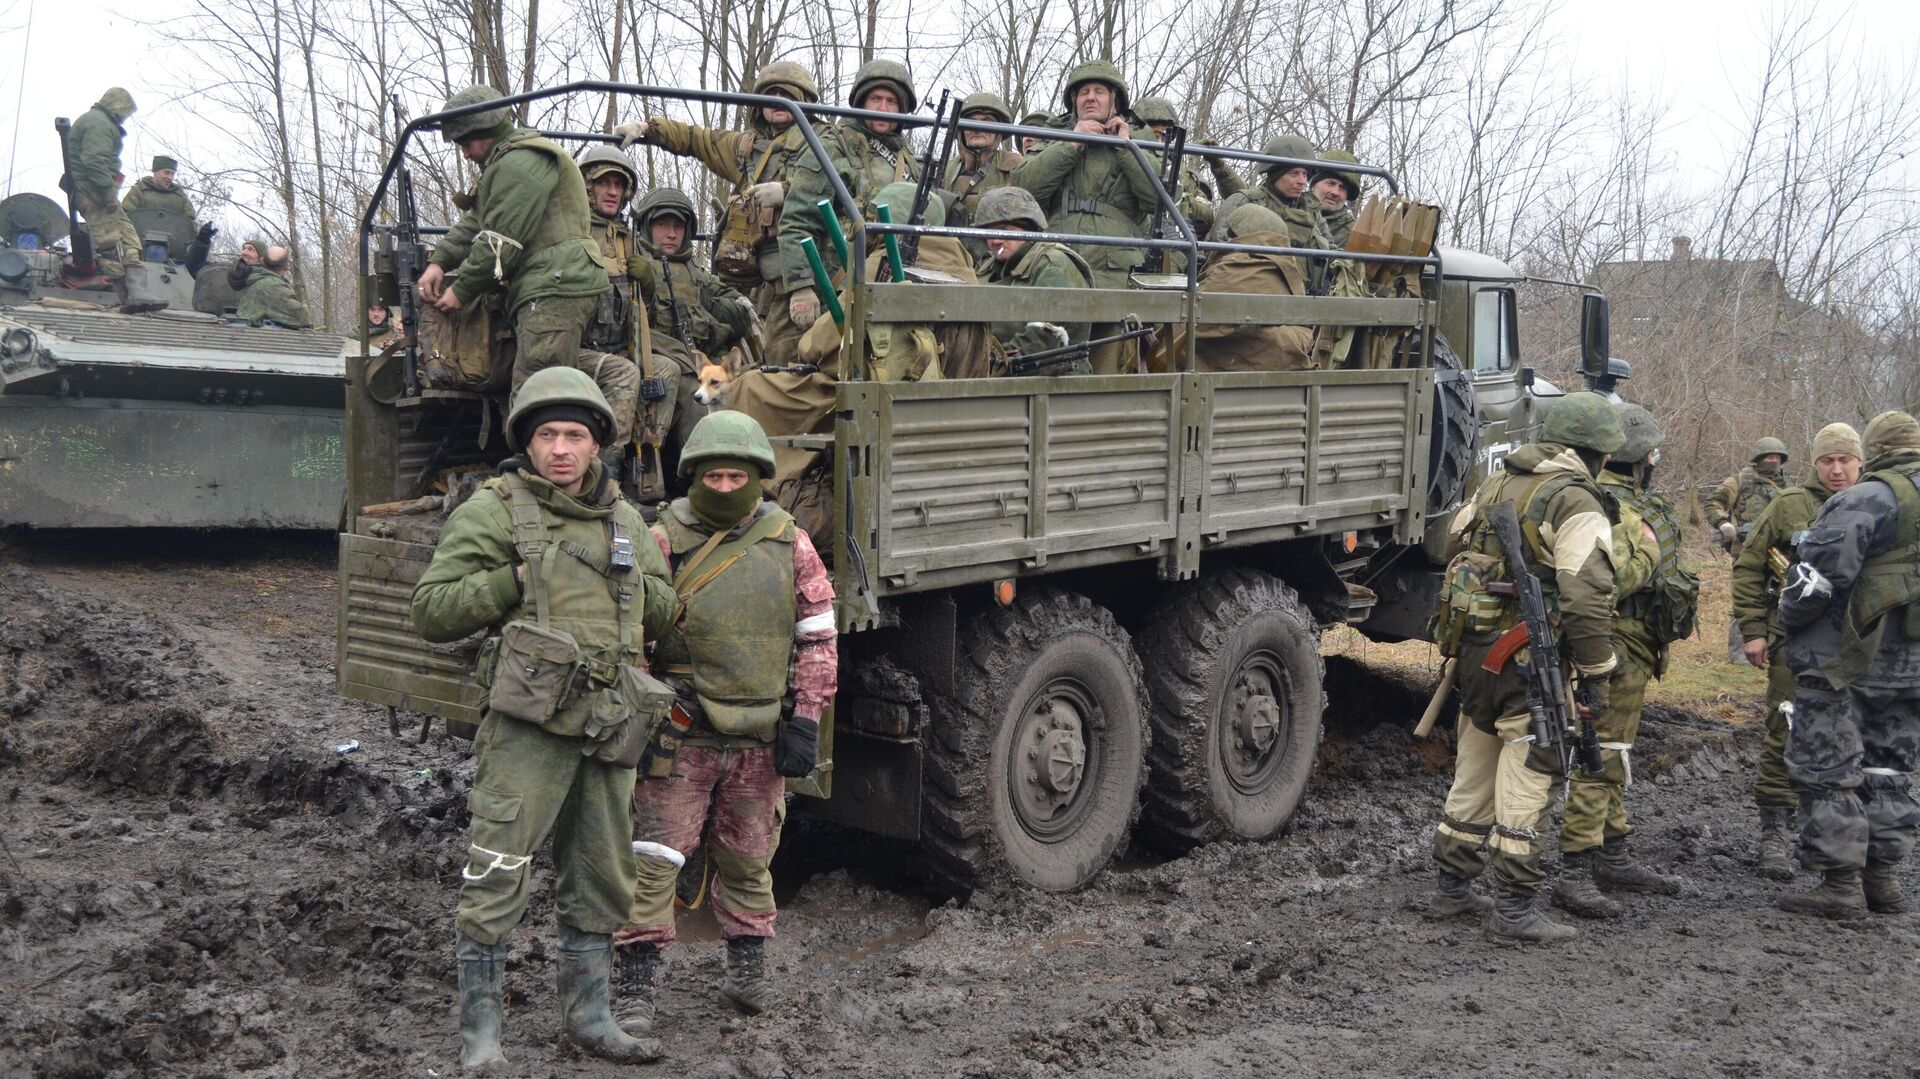 Z российские военные фото